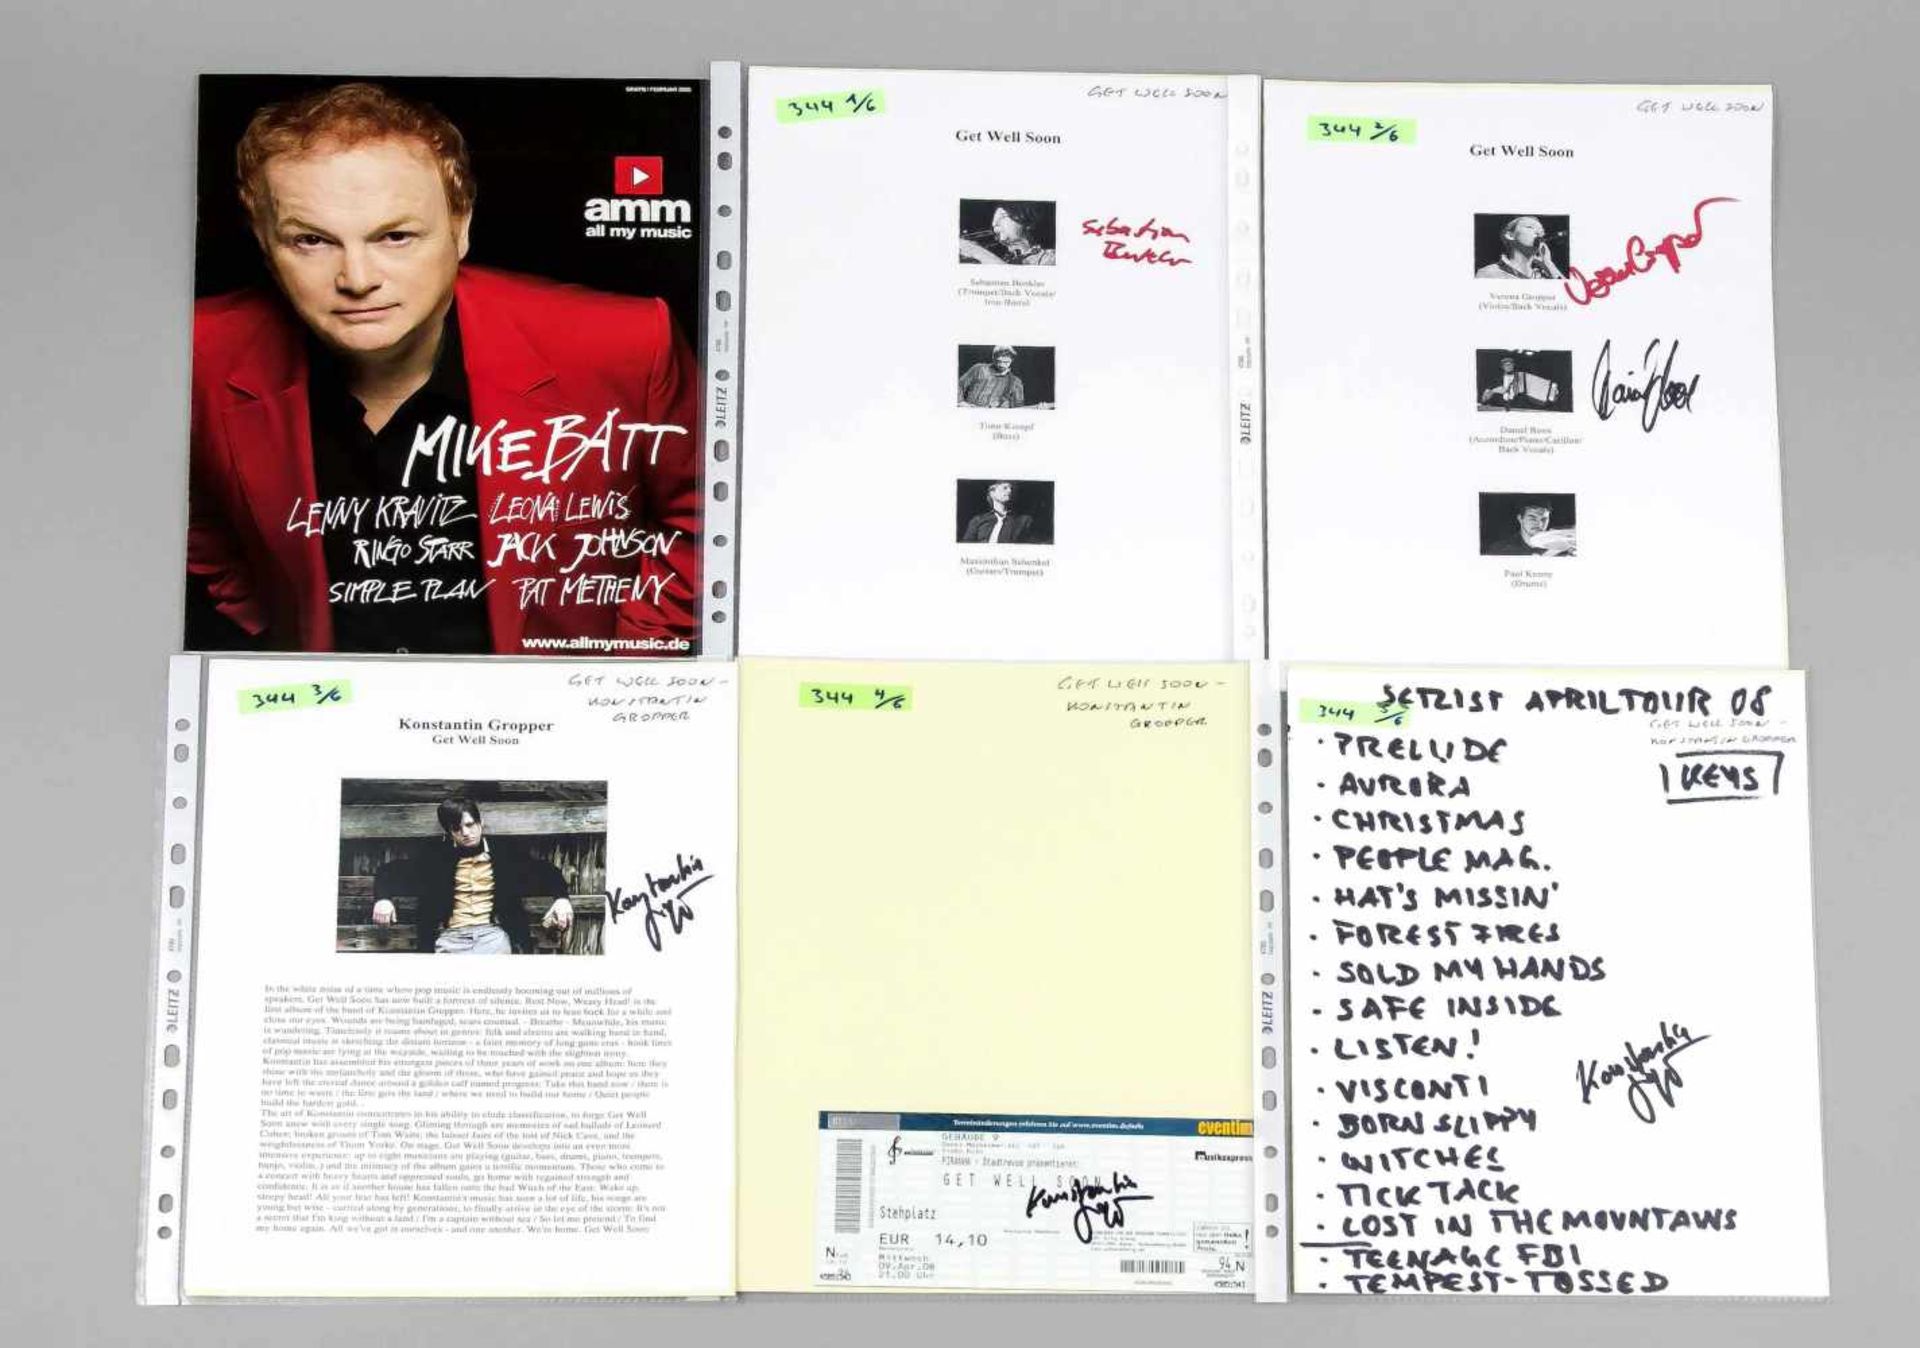 Get Well Soon, CD und LP 'Rest Now. Weary Head!', Ausdrucke, Eintrittskarte, etc., 2008,tlw. mit - Image 2 of 2